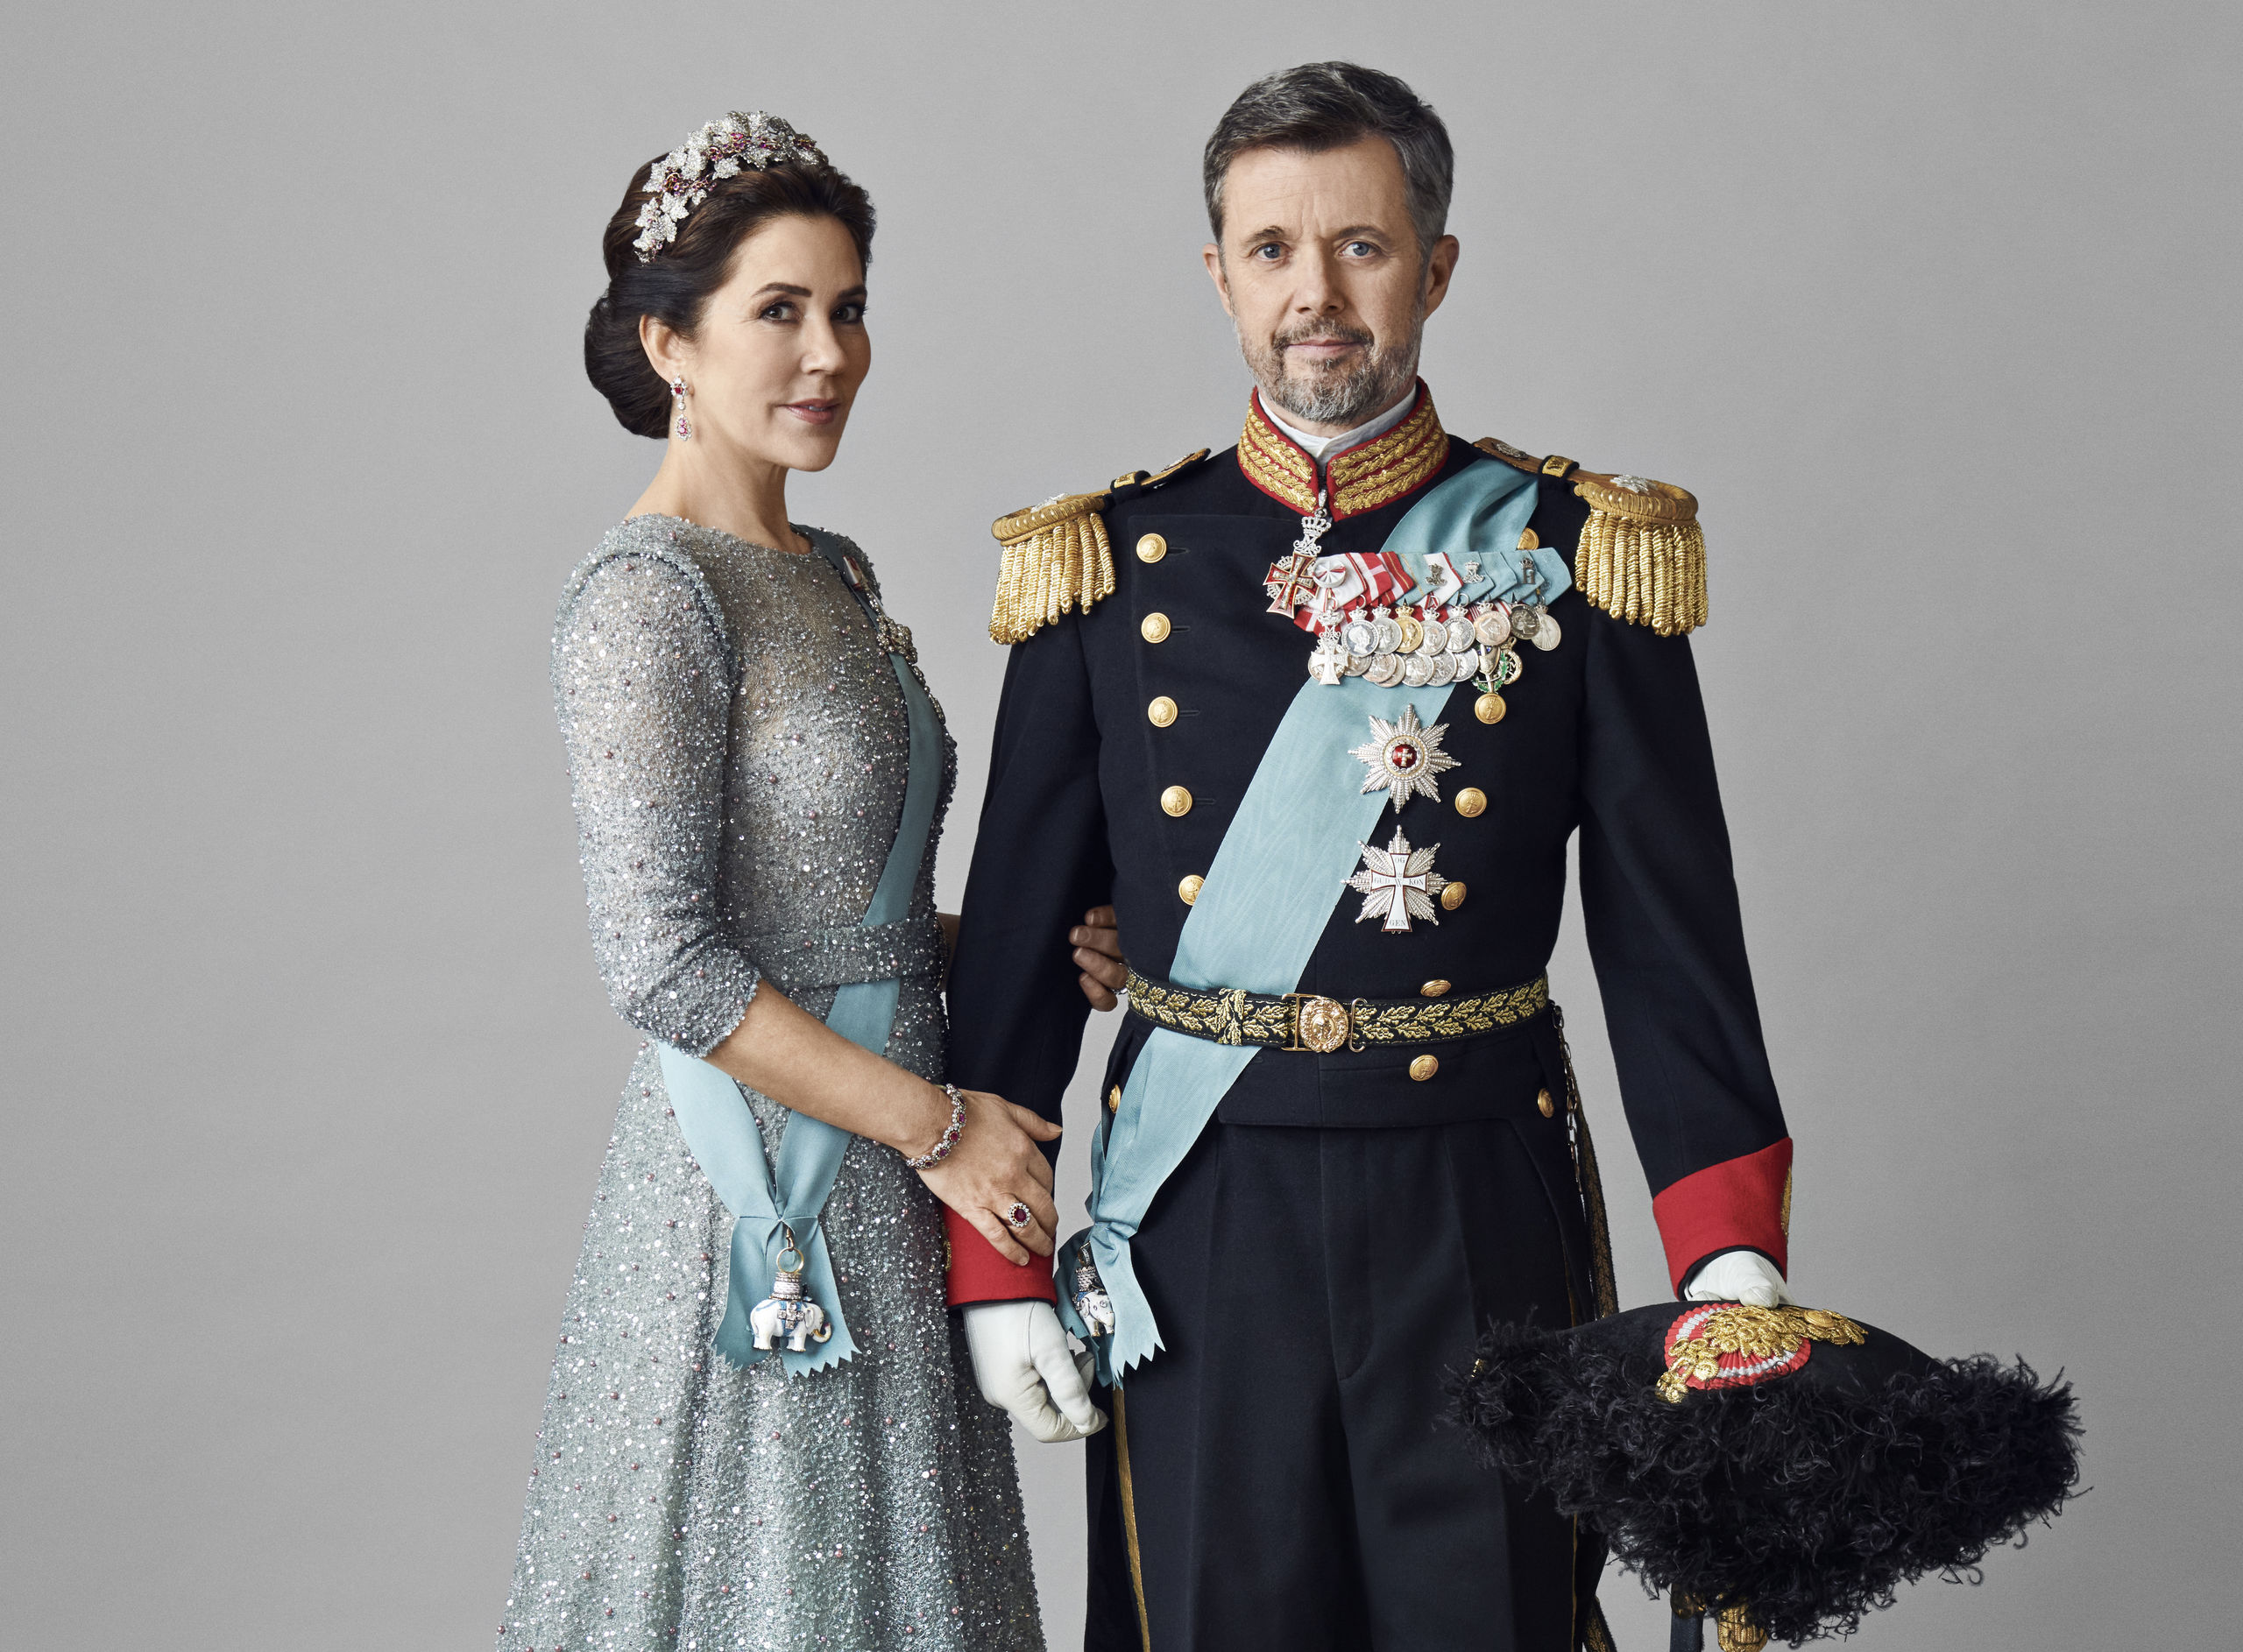 La casa real danesa publica las fotografías oficiales de los futuros reyes Federico y Mary